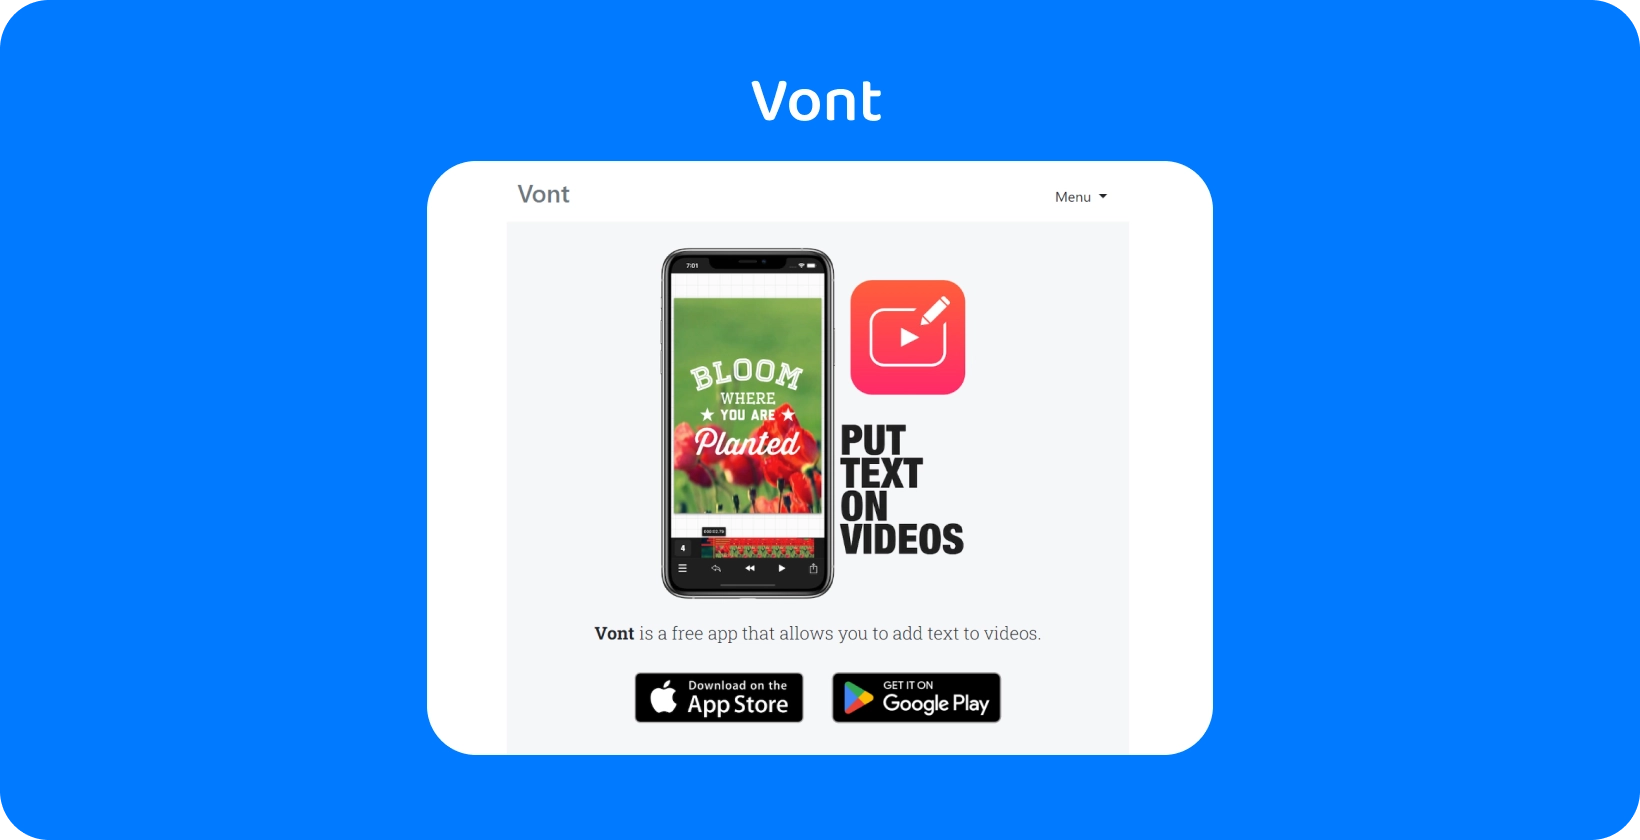 Smartfón zobrazujúci Vont rozhranie aplikácie a zvýrazňujúci jeho funkciu pridávania textu do videí, ktoré sú k dispozícii na App Store a Google Play